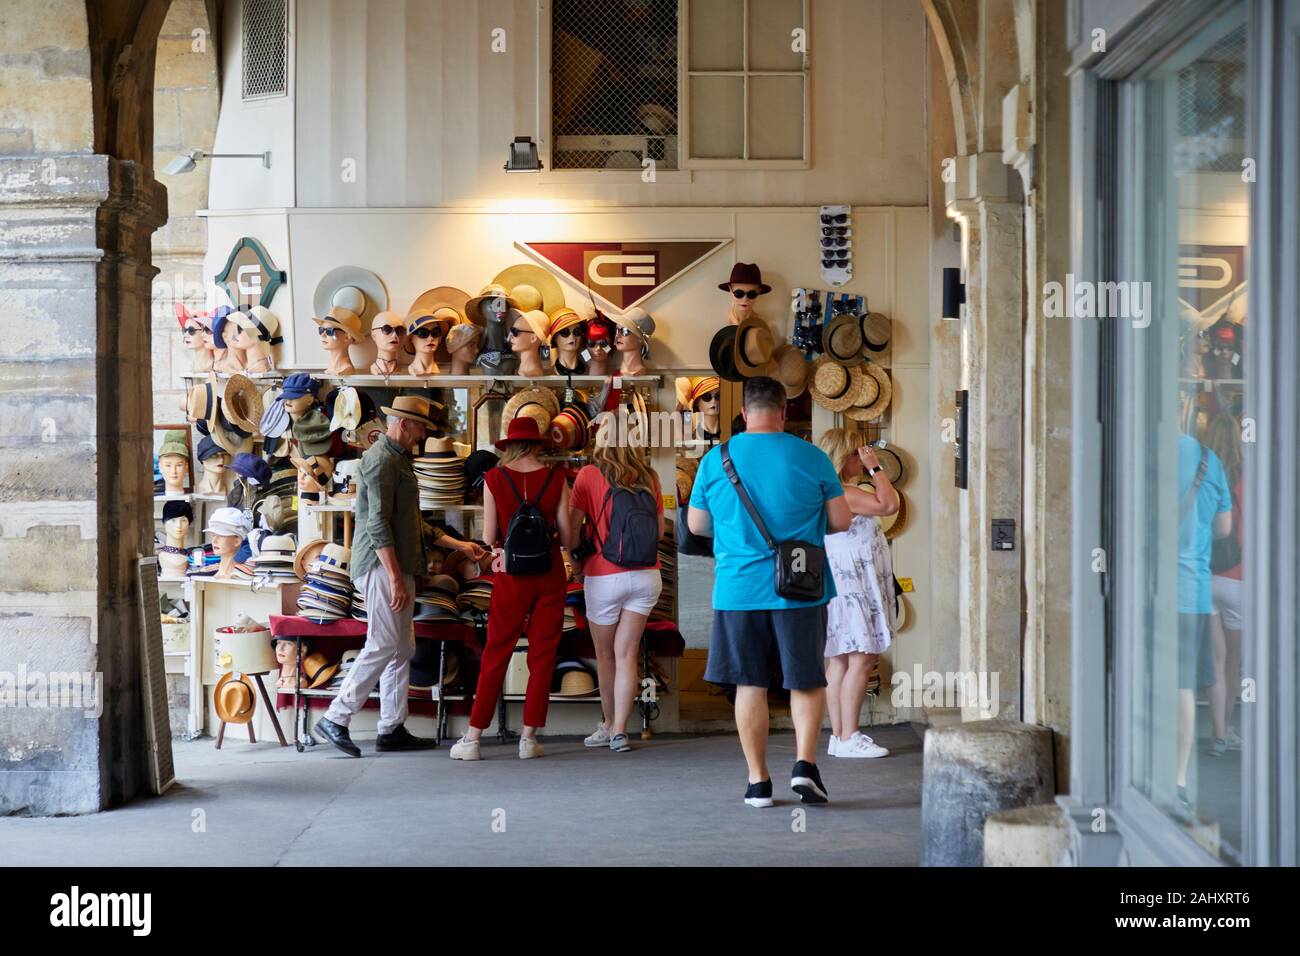 De sombrerería, vendiendo sombreros, la Plaza des Vosges, en París, Francia Foto de stock